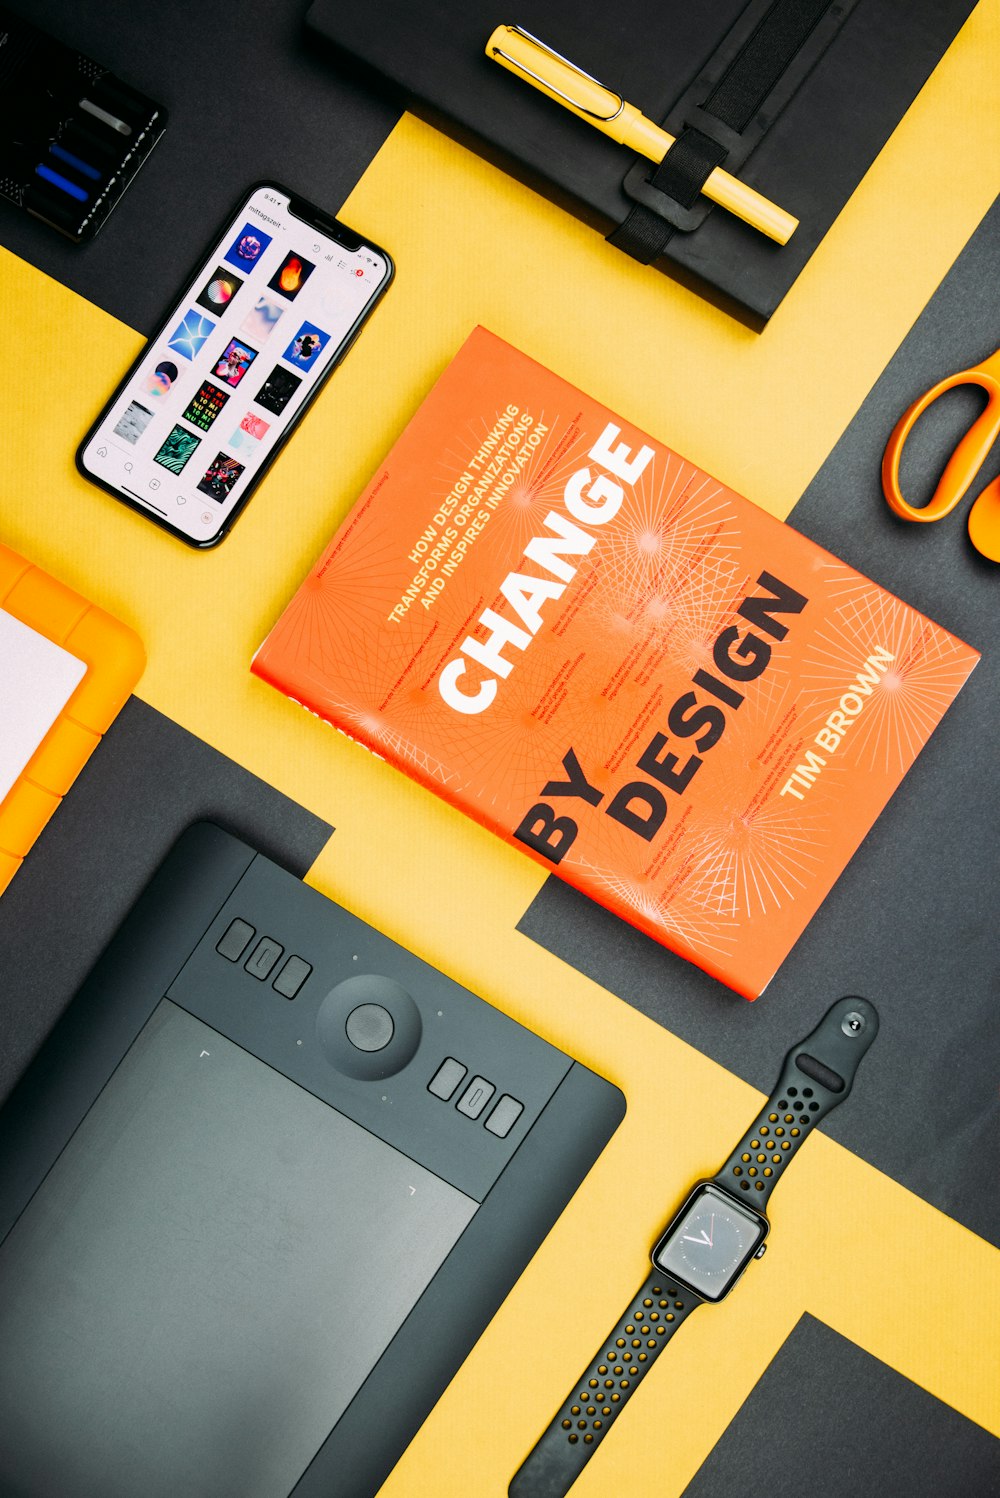 Il libro Change by Design di Tim Brown accanto allo smartphone